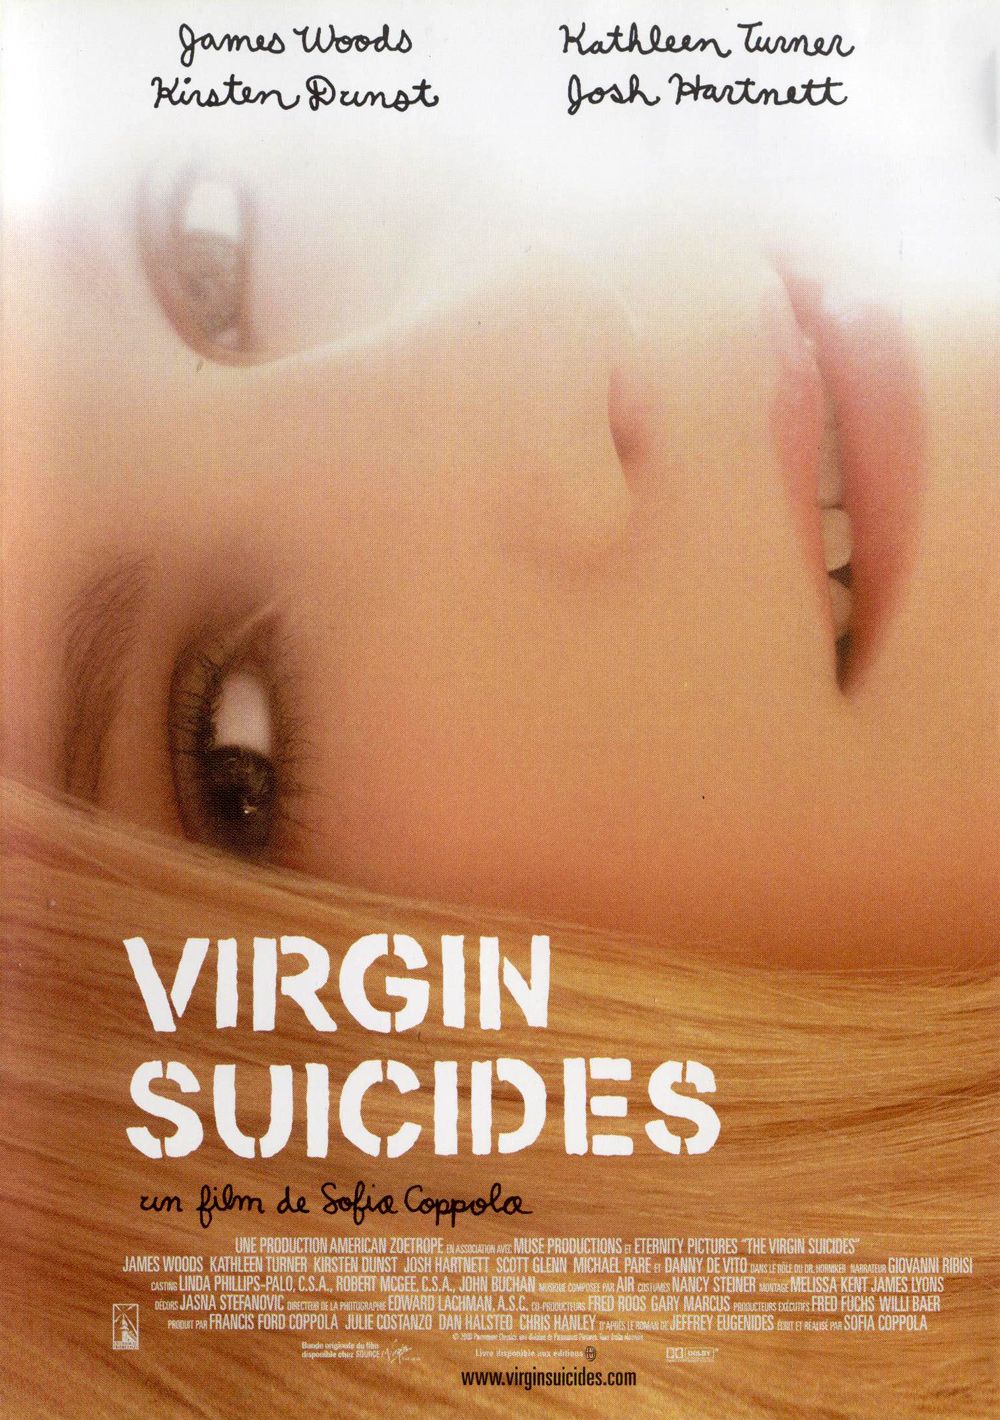 Résultat de recherche d'images pour "Virgin suicides affiche"